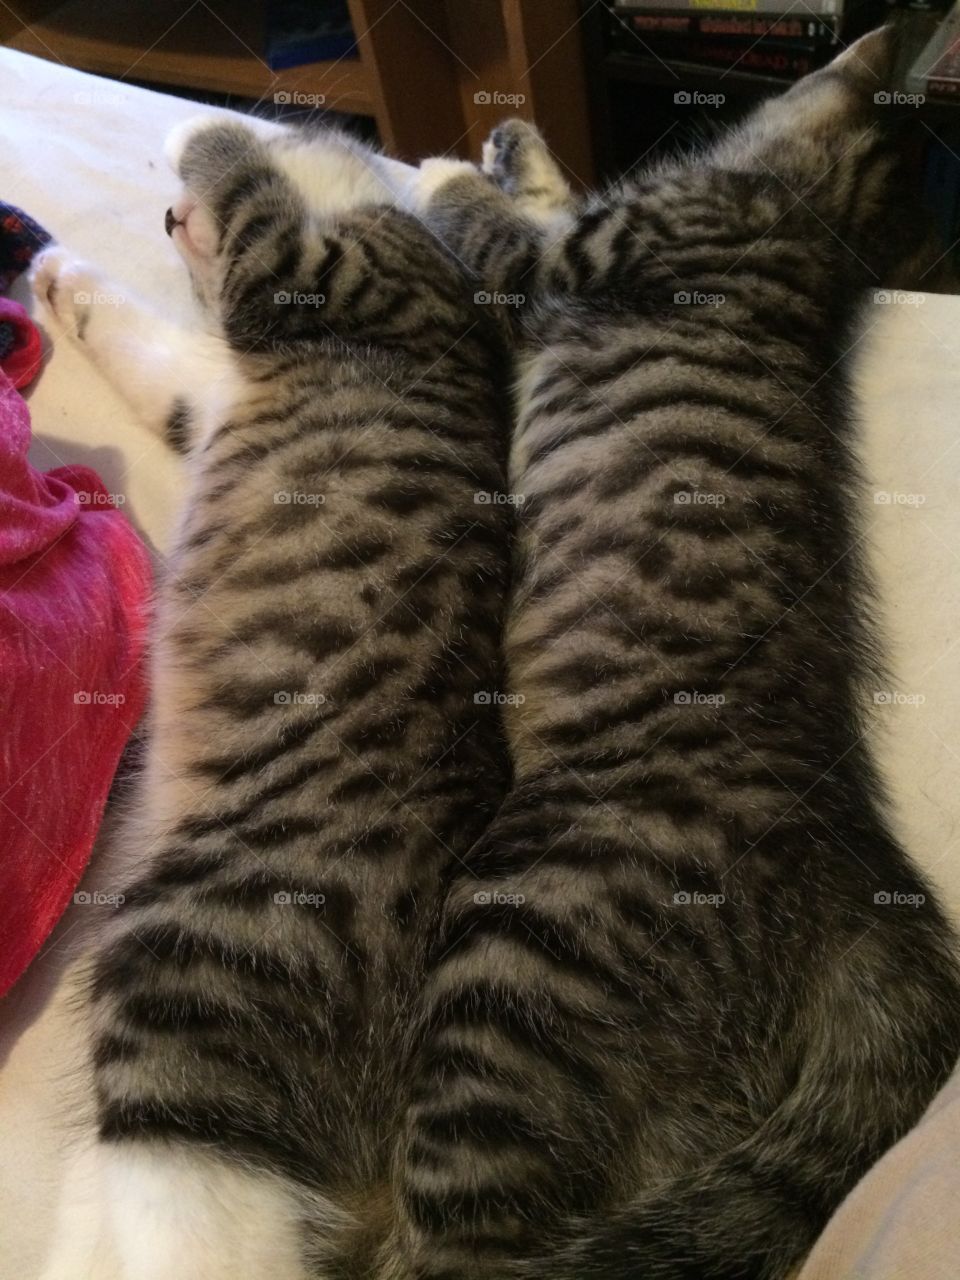 Spooning kittens